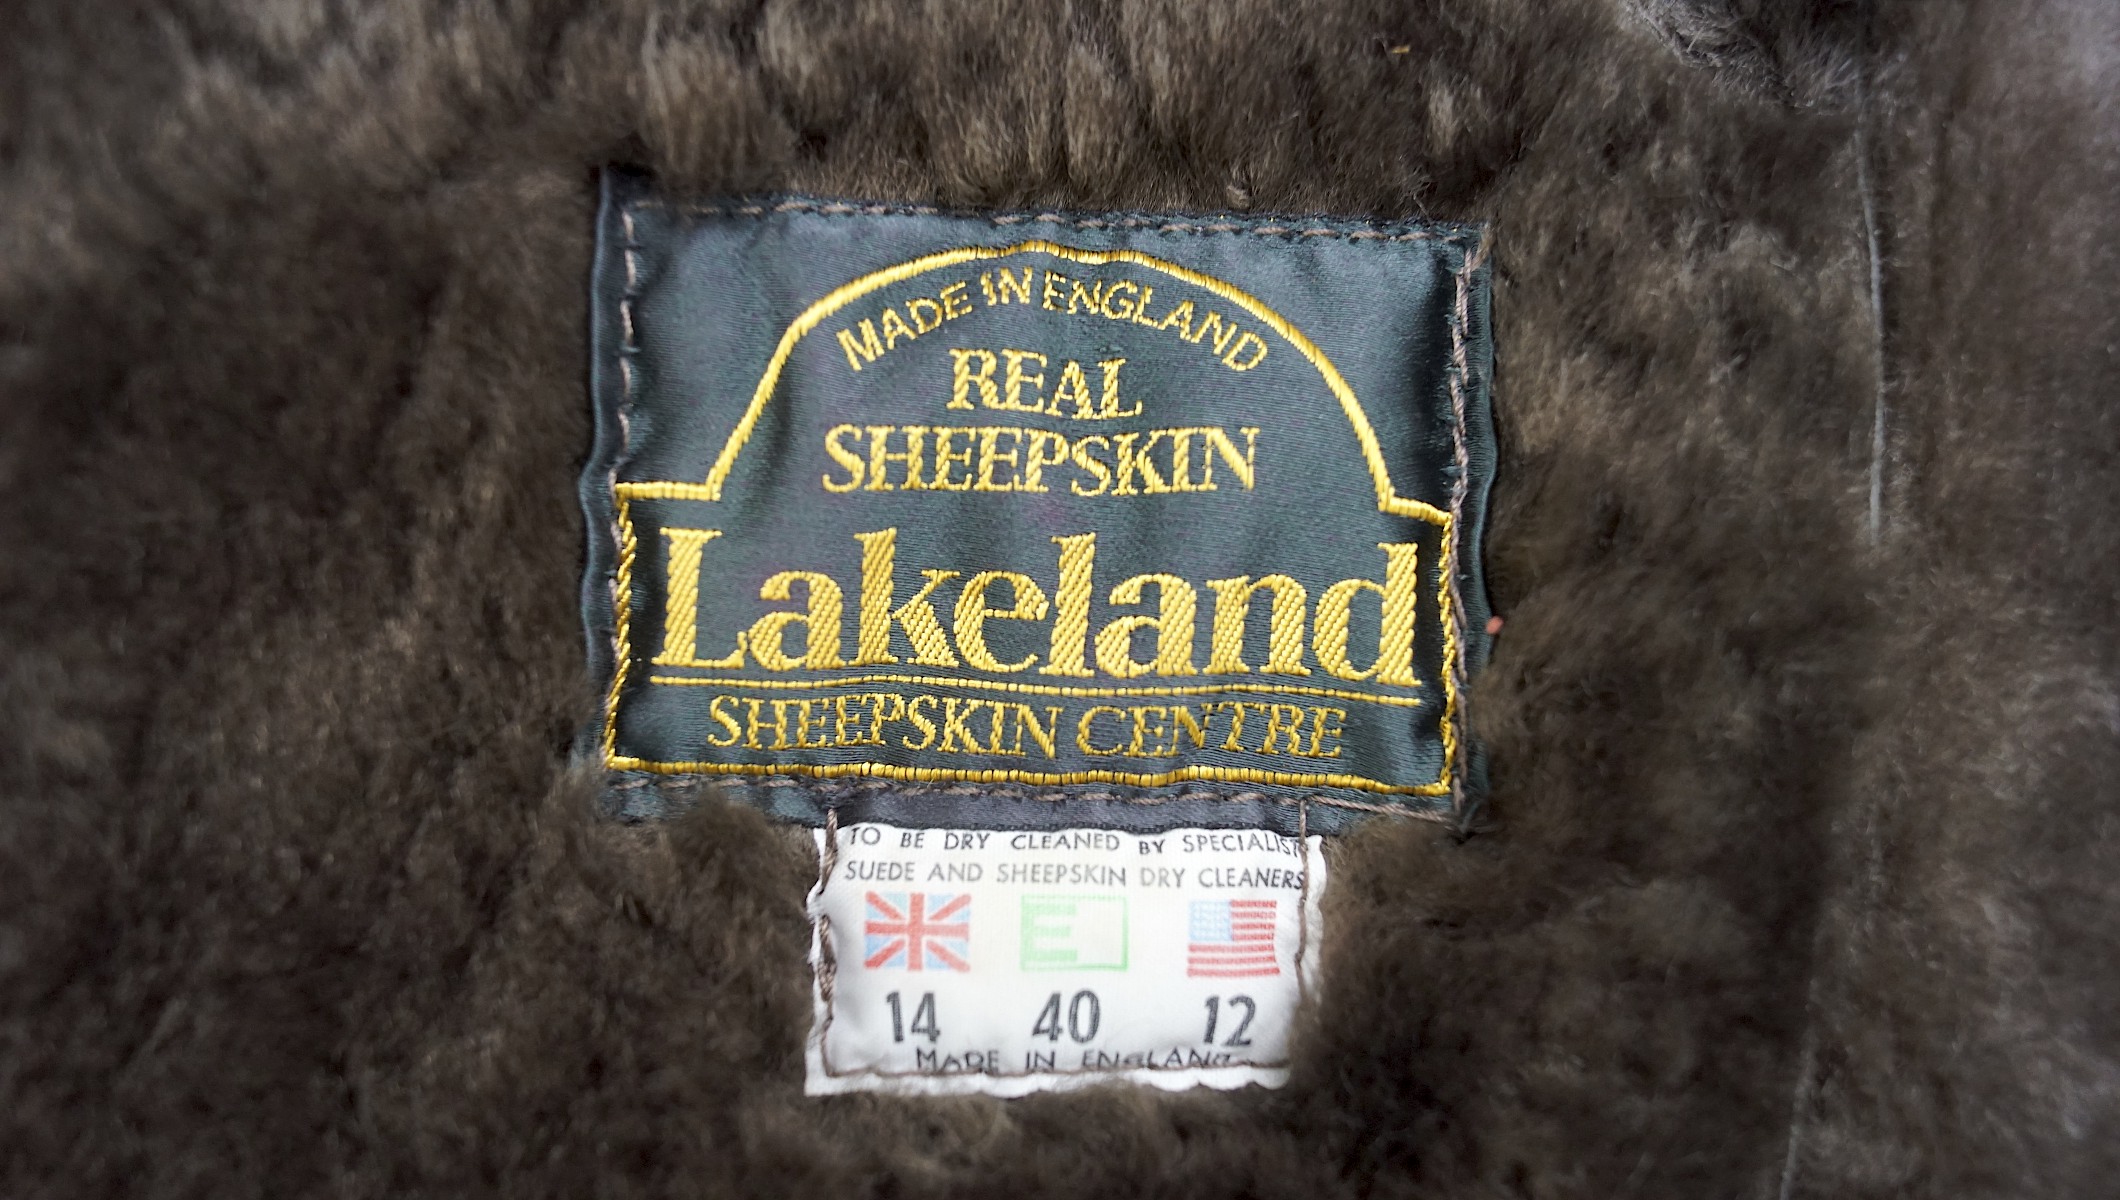 A modern Lakeland real sheepskin coat, UK size 14, - Image 2 of 2